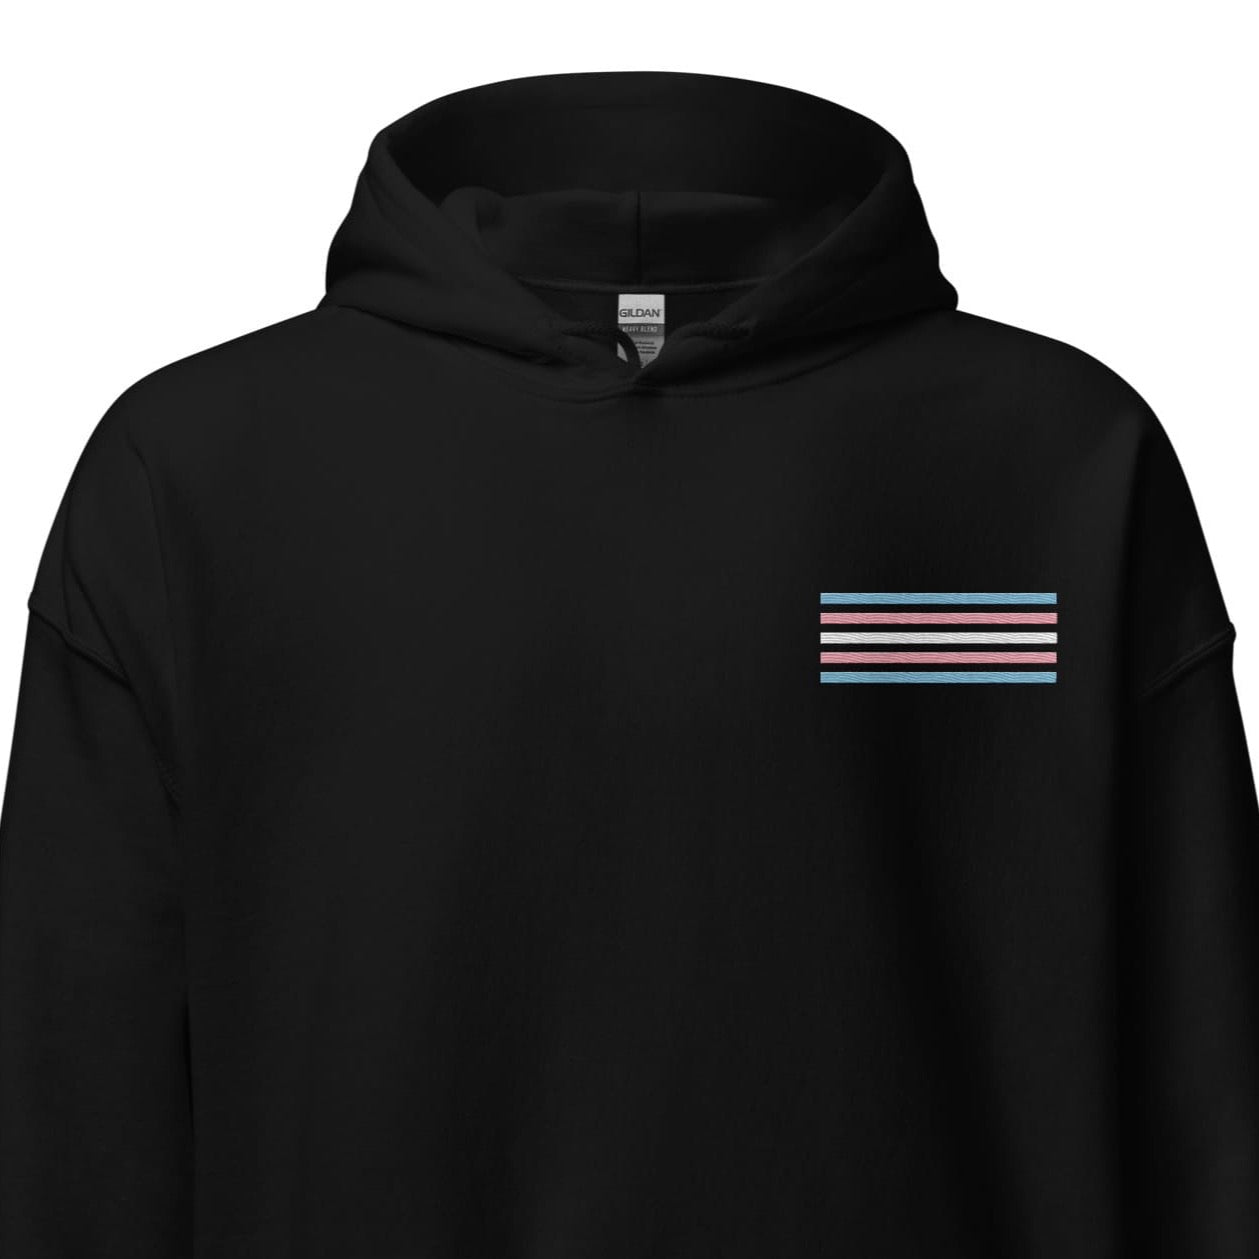 transgender hoodie, subtle trans pride flag embroidered pocket design hooded sweatshirt, main